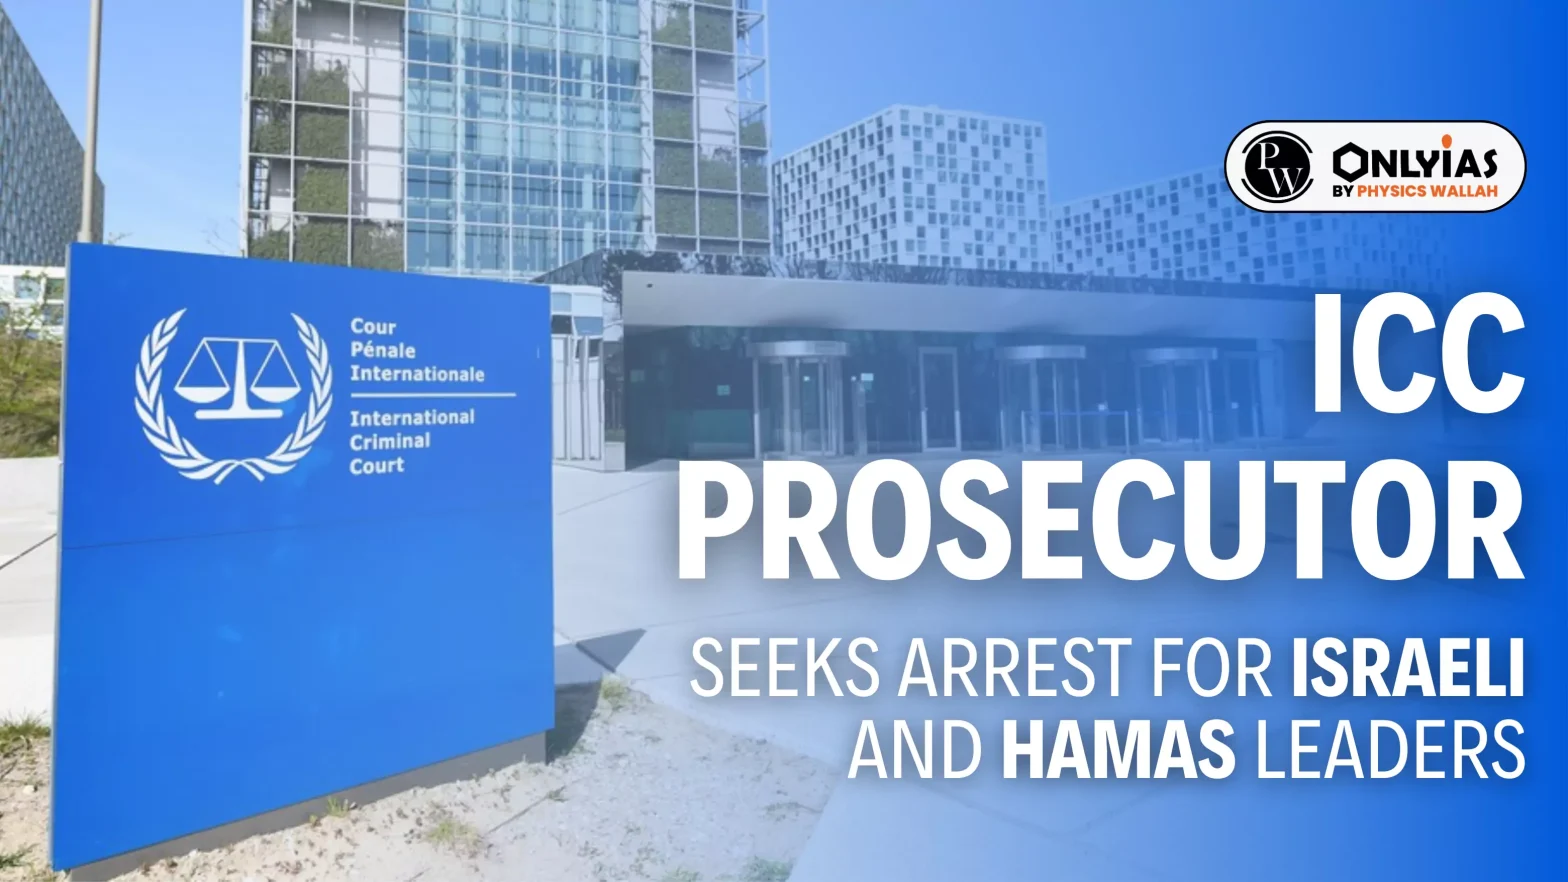 ICC prosecutor seeks arrest for Israeli and Hamas leaders